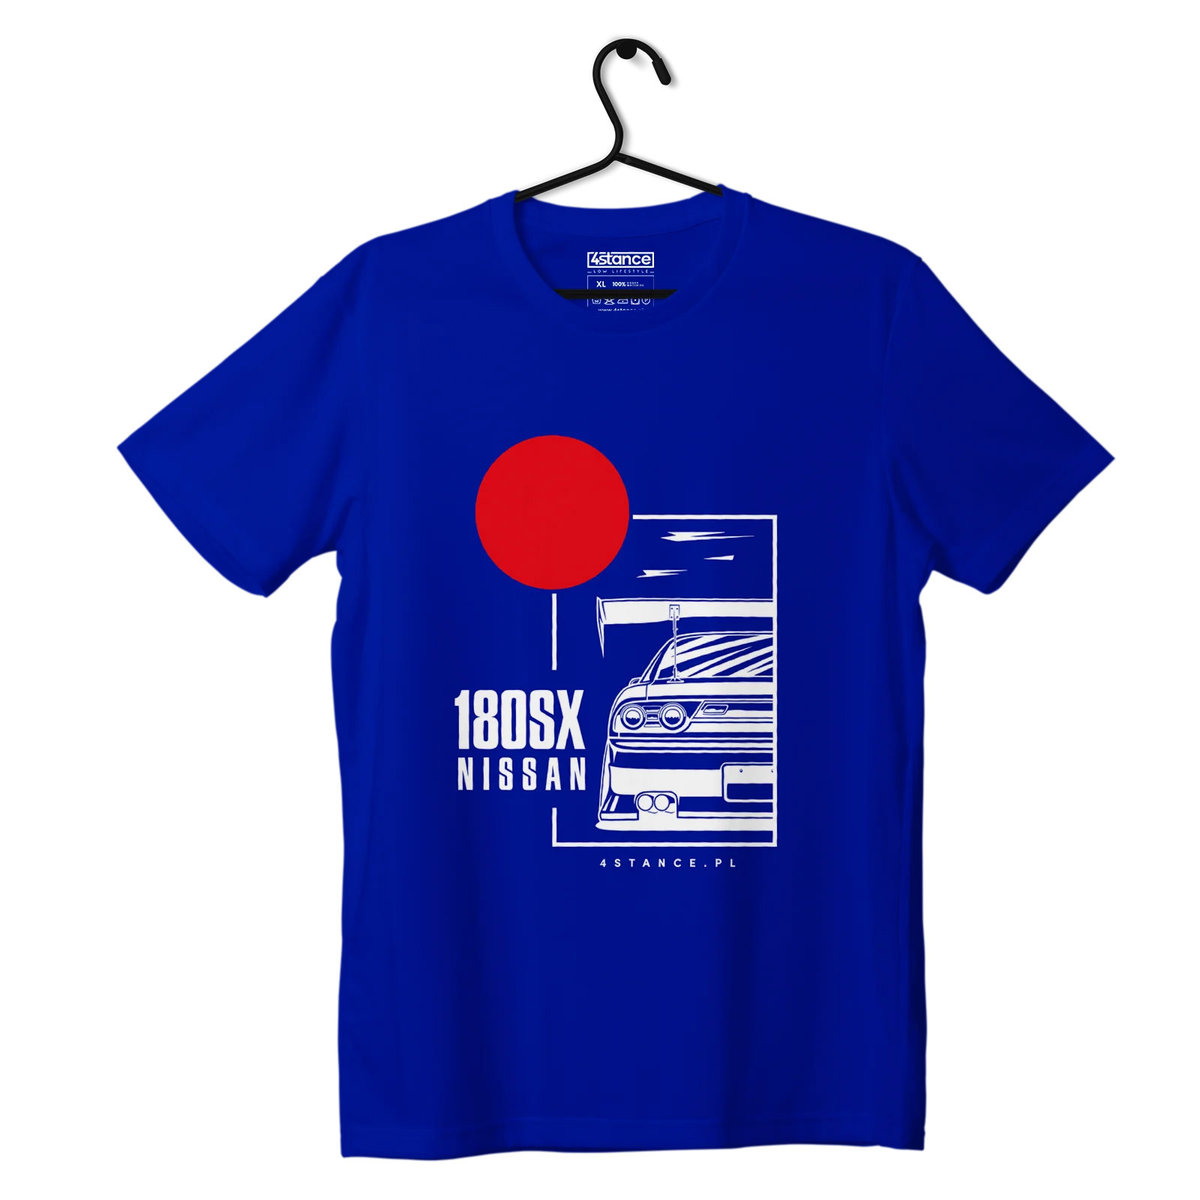 Zdjęcia - Odzież motocyklowa Nissan T-shirt koszulka  180SX niebieska-XS 